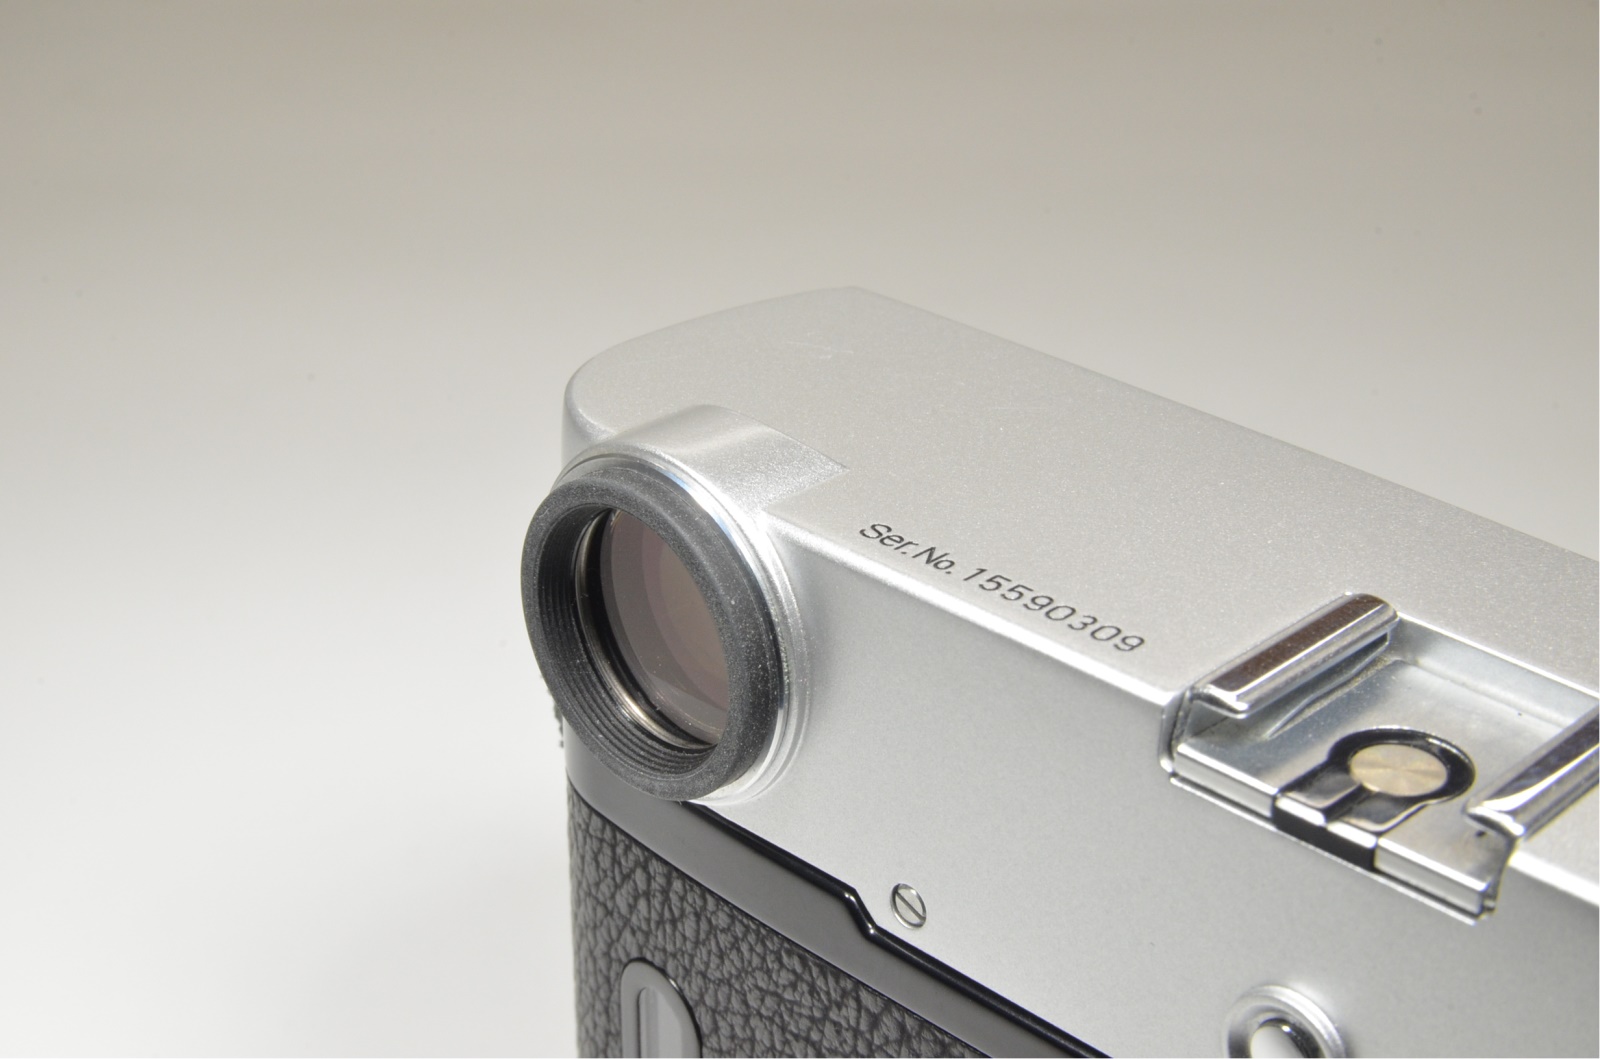 zeiss ikon zm m-mount rangefinder 35mm film camera silver film tested